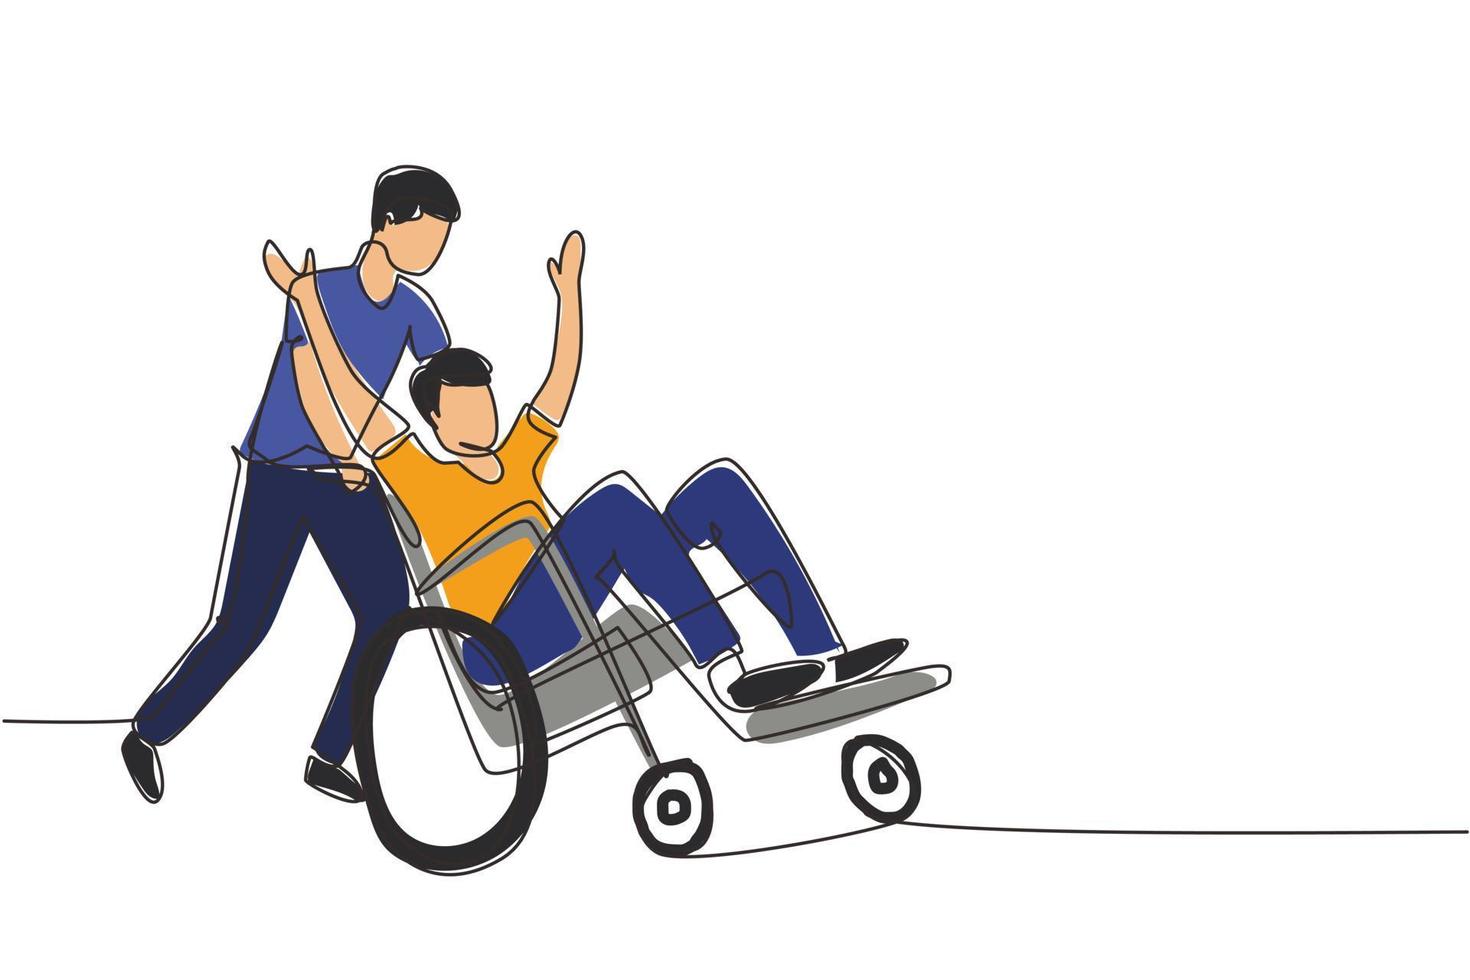 enkele doorlopende lijntekening jonge mannelijke vrijwilliger helpt gehandicapte oude man, rijdend op een rolstoel in het park. gezinszorg, vrijwilligerswerk, gehandicaptenzorgconcept. één lijn tekenen ontwerp vectorillustratie vector